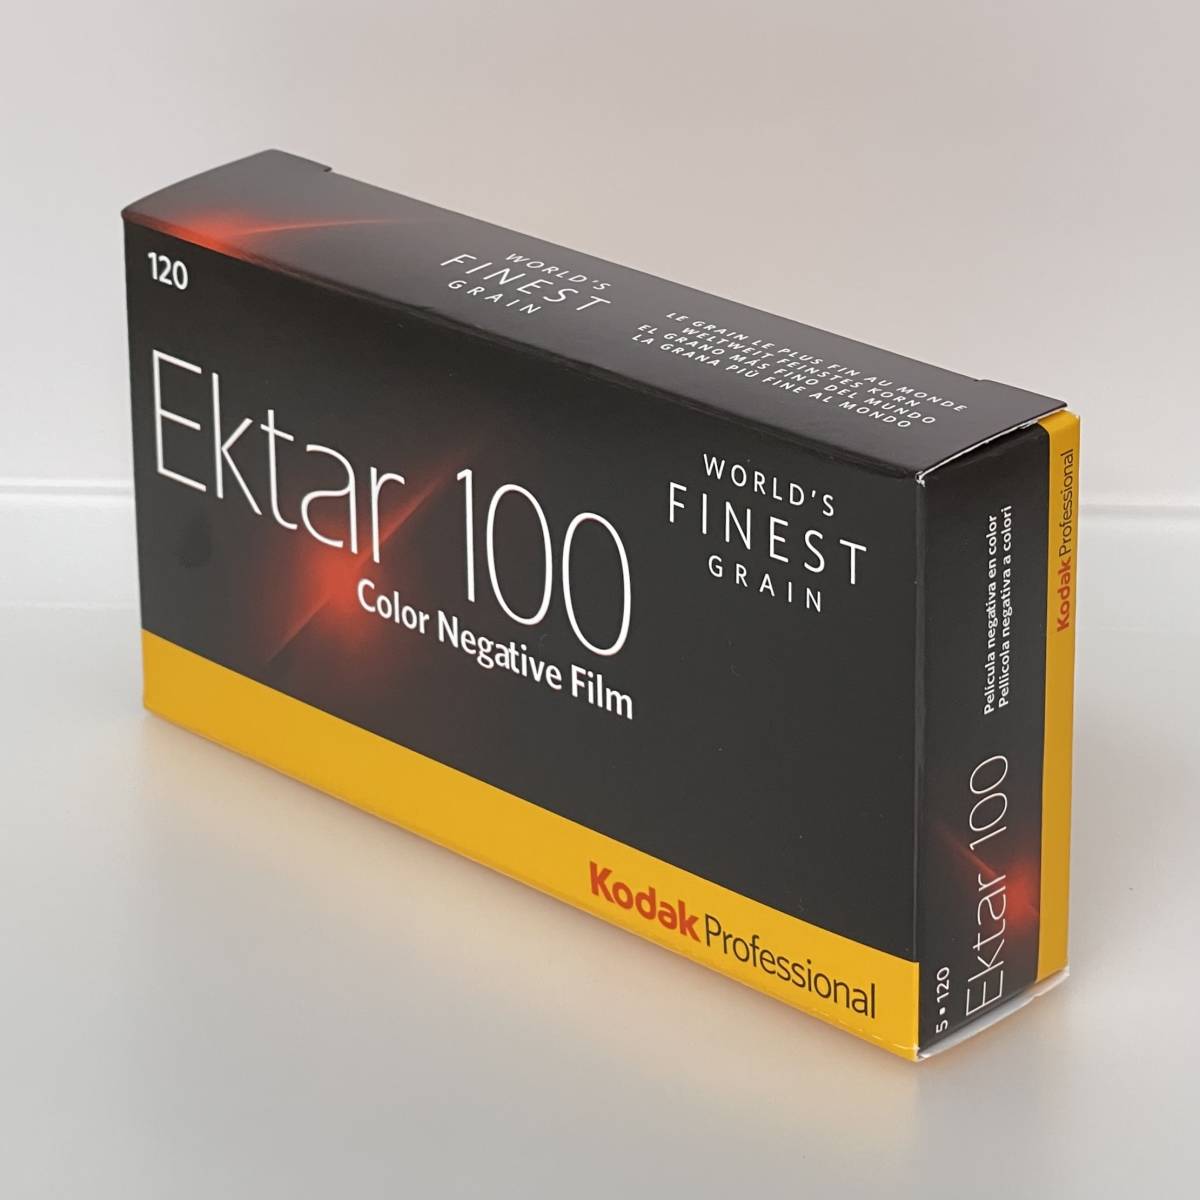 【激安大特価！】 コダック Kodak 5本パック 120 Ektar（エクター）100 その他